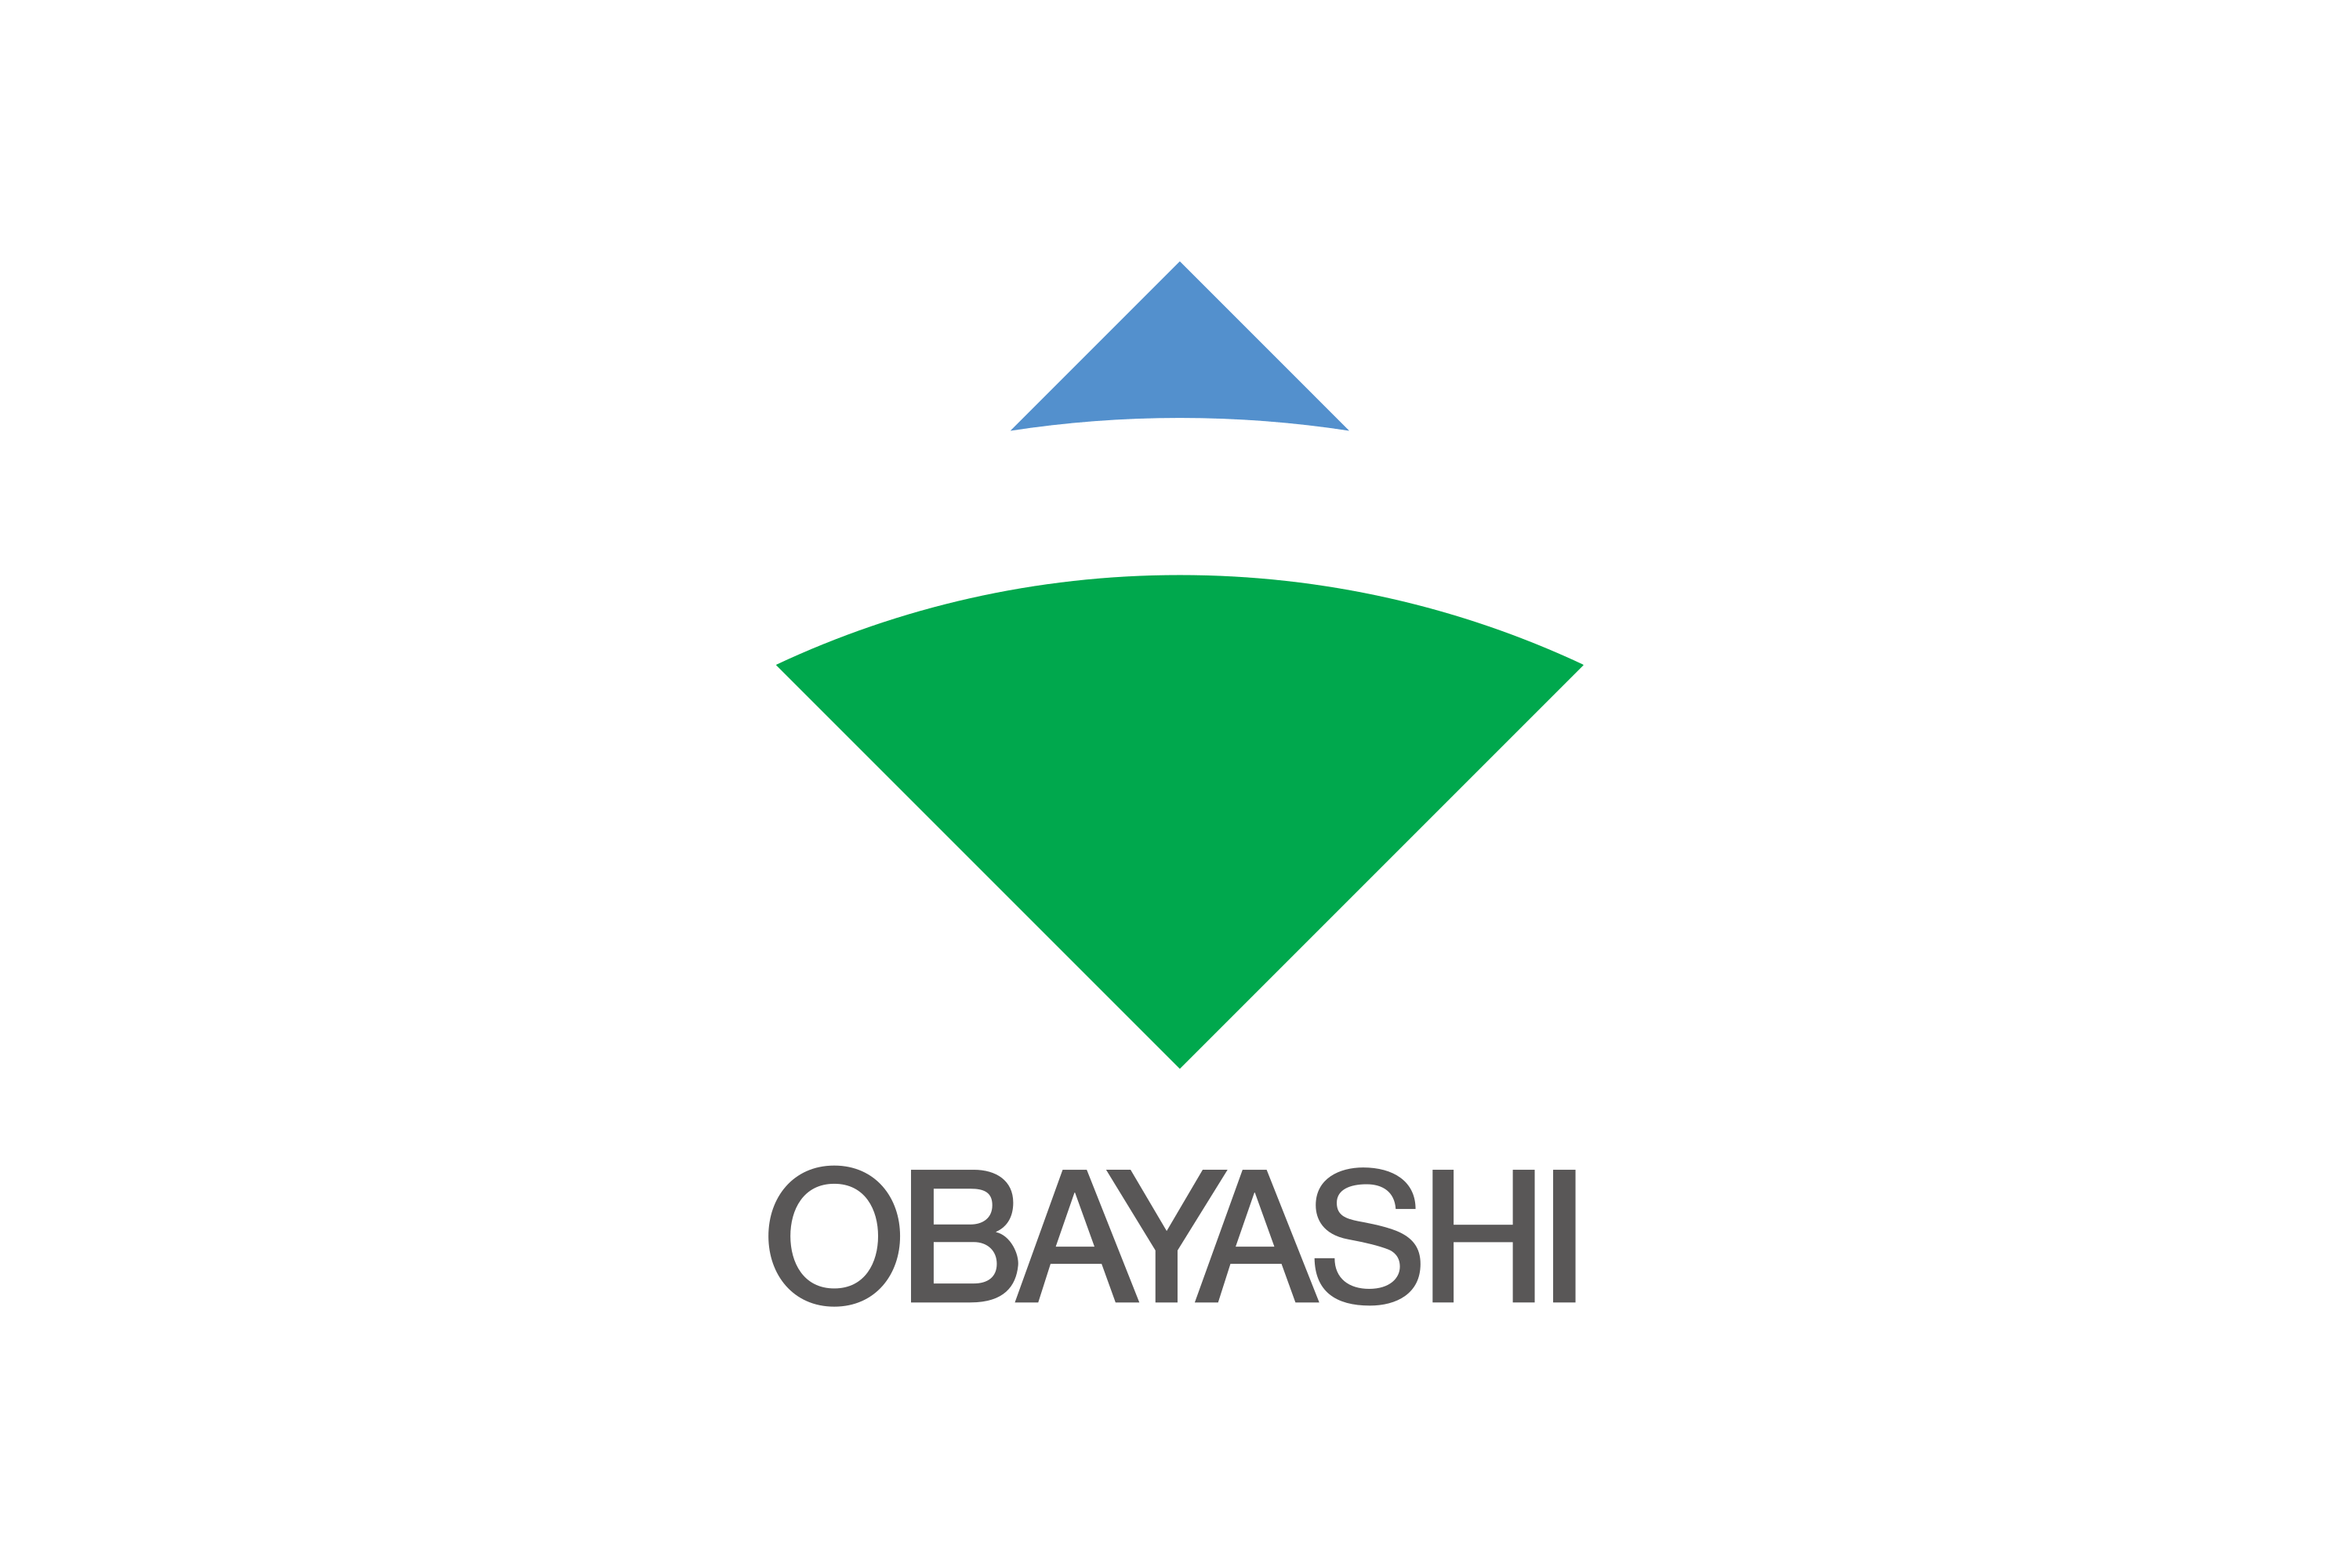 Obayashi Corporation Logo